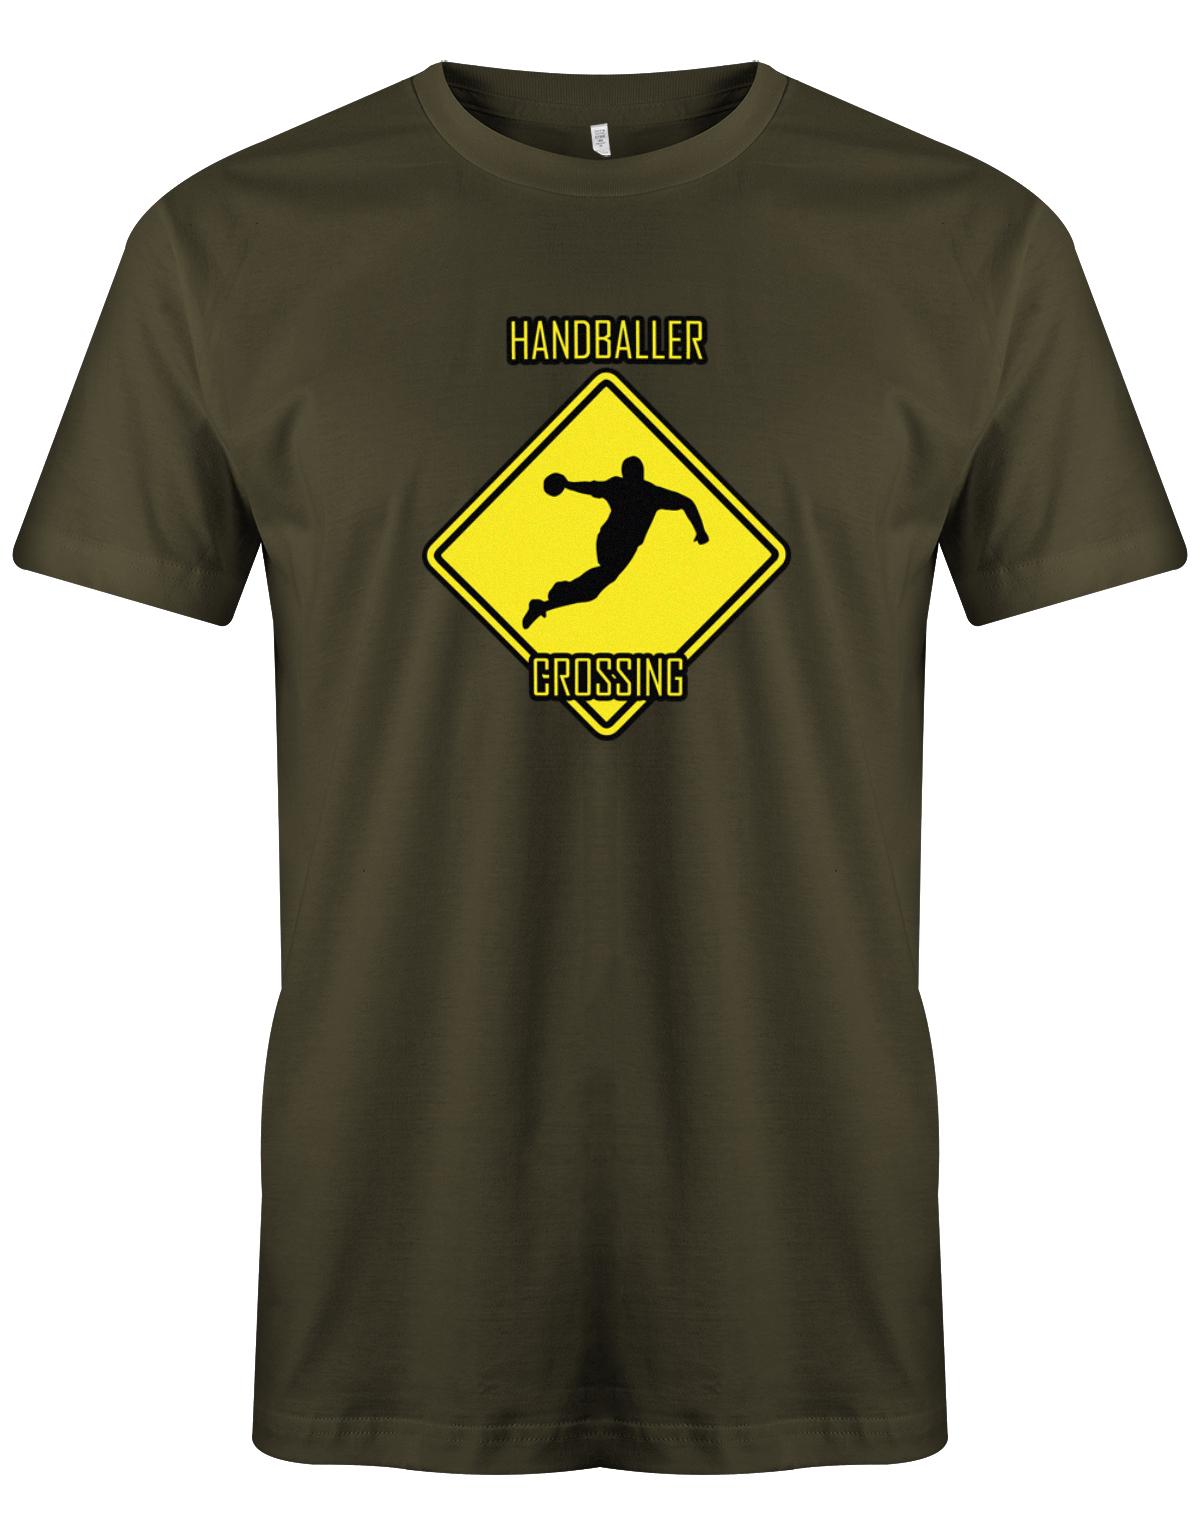 HAndballer-Crossing-Handball-Shirt-Herren-Army